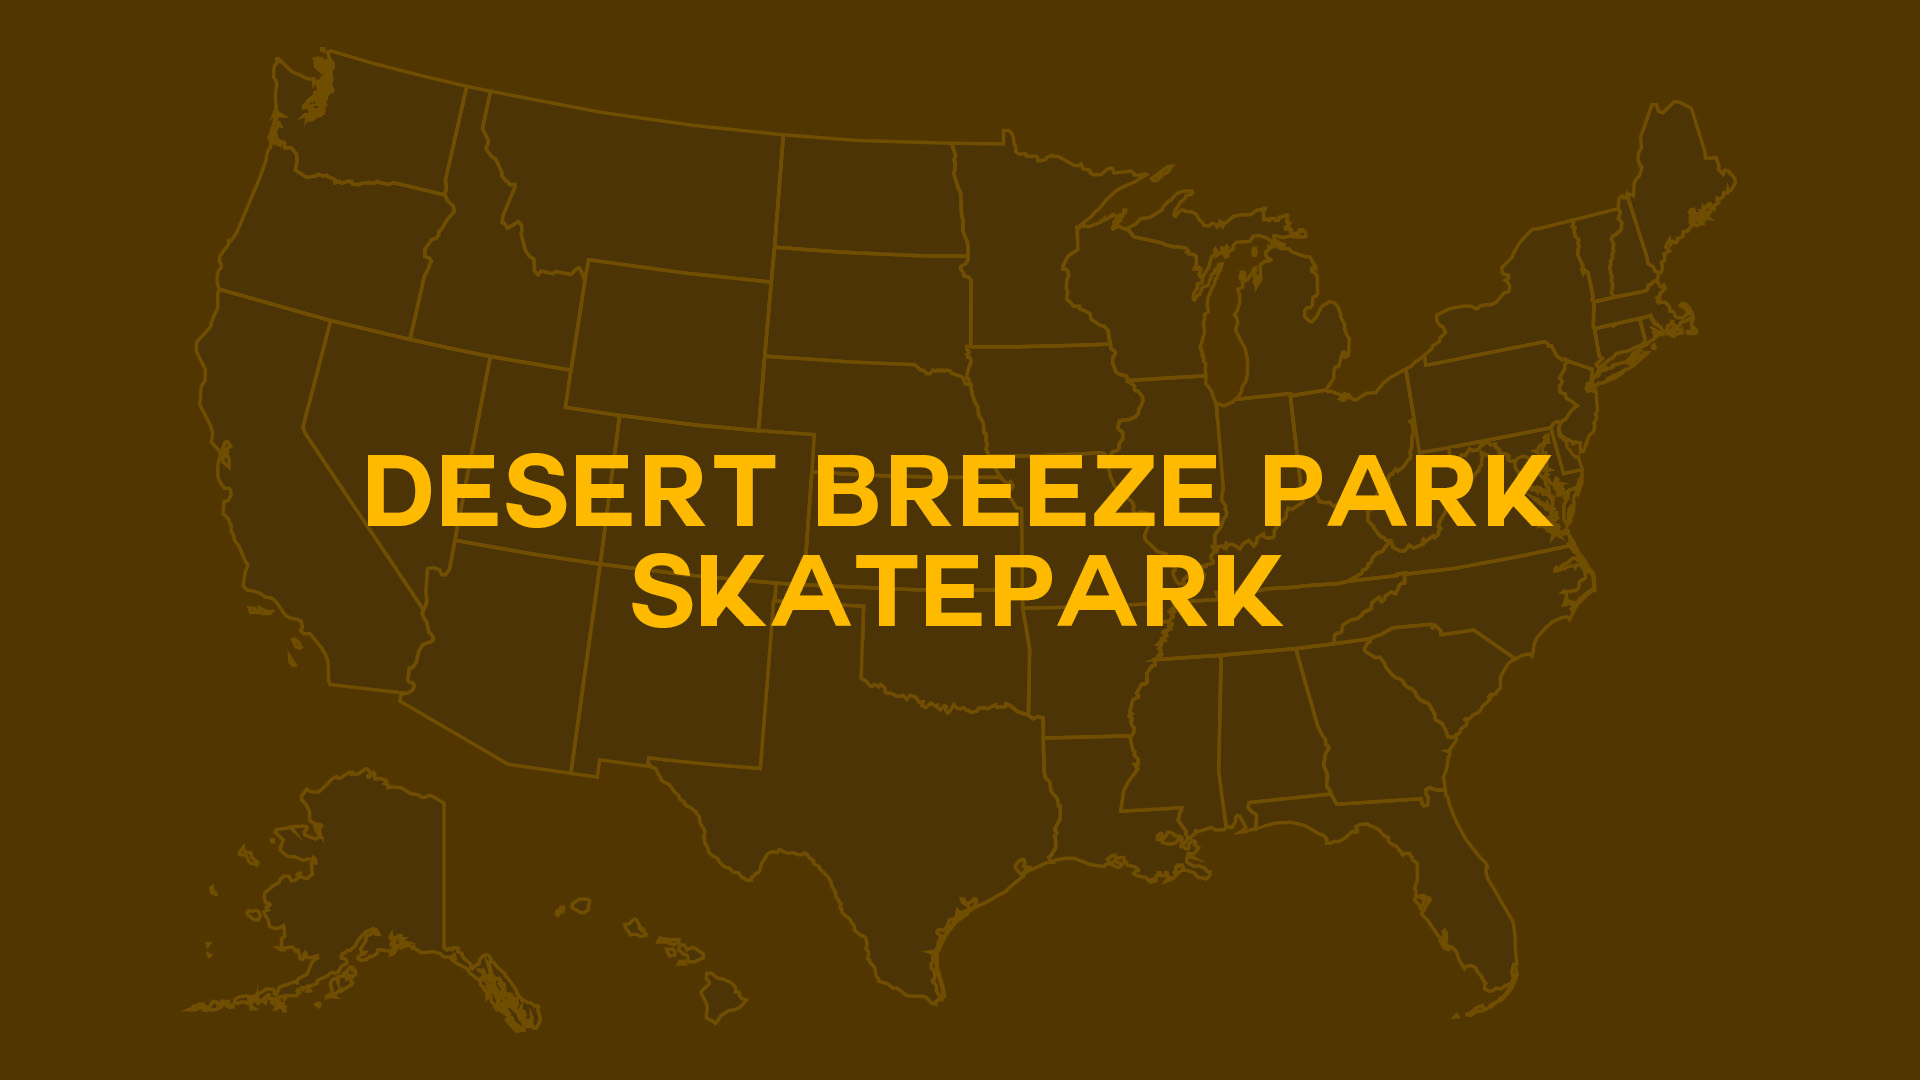 Title card for Desert Breeze Park Skatepark.